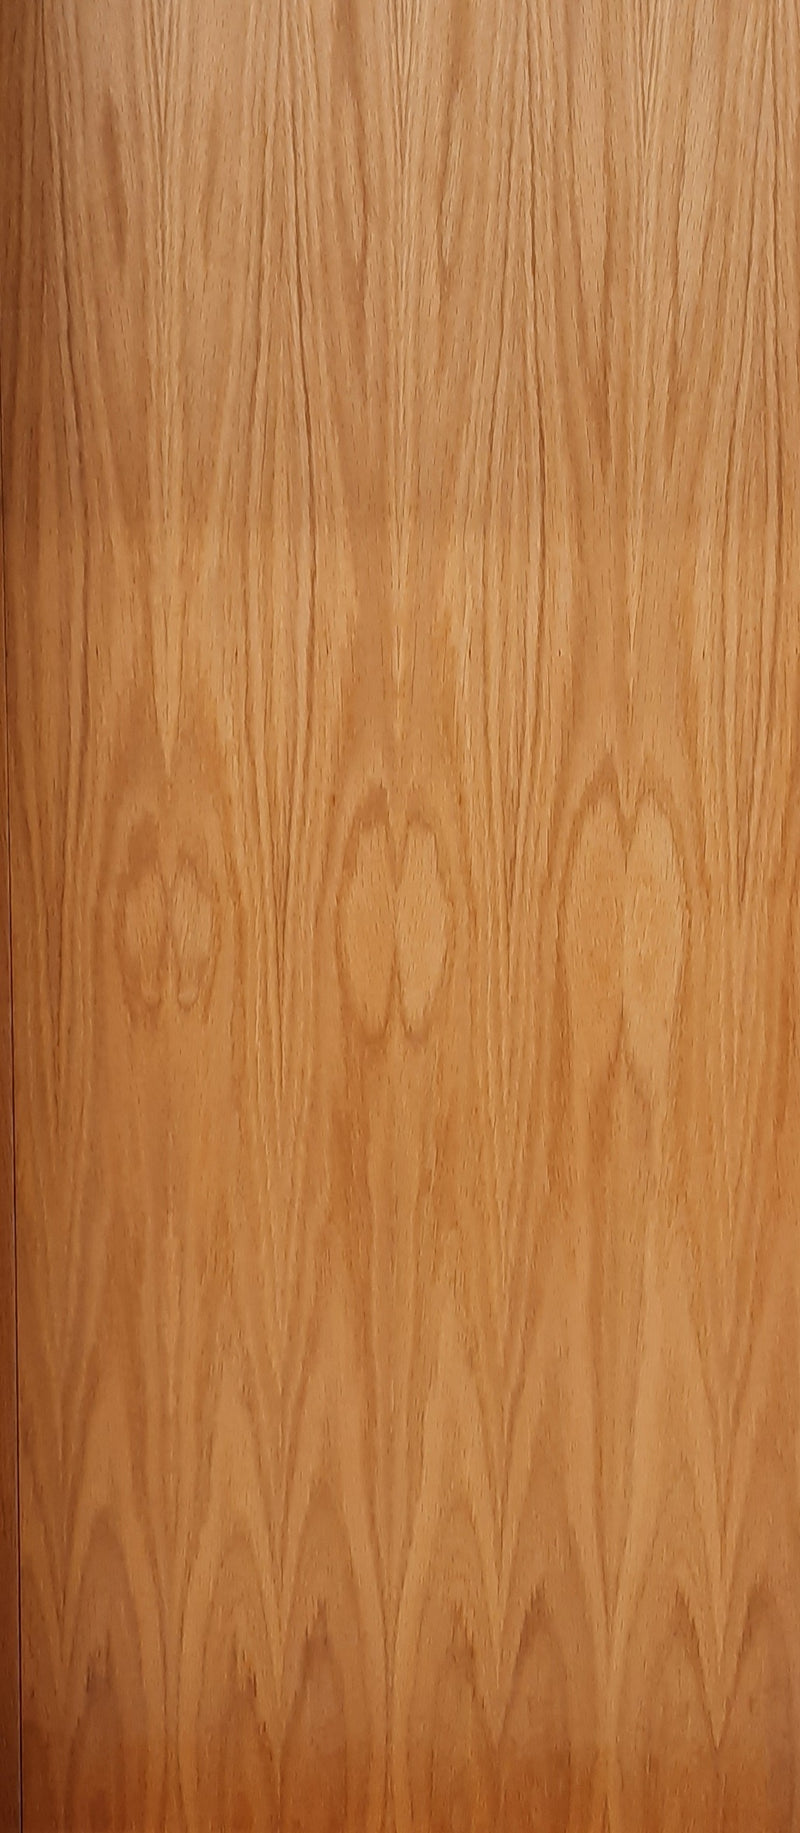 Pattern 10 Oak Internal Door with Obscure Glass X